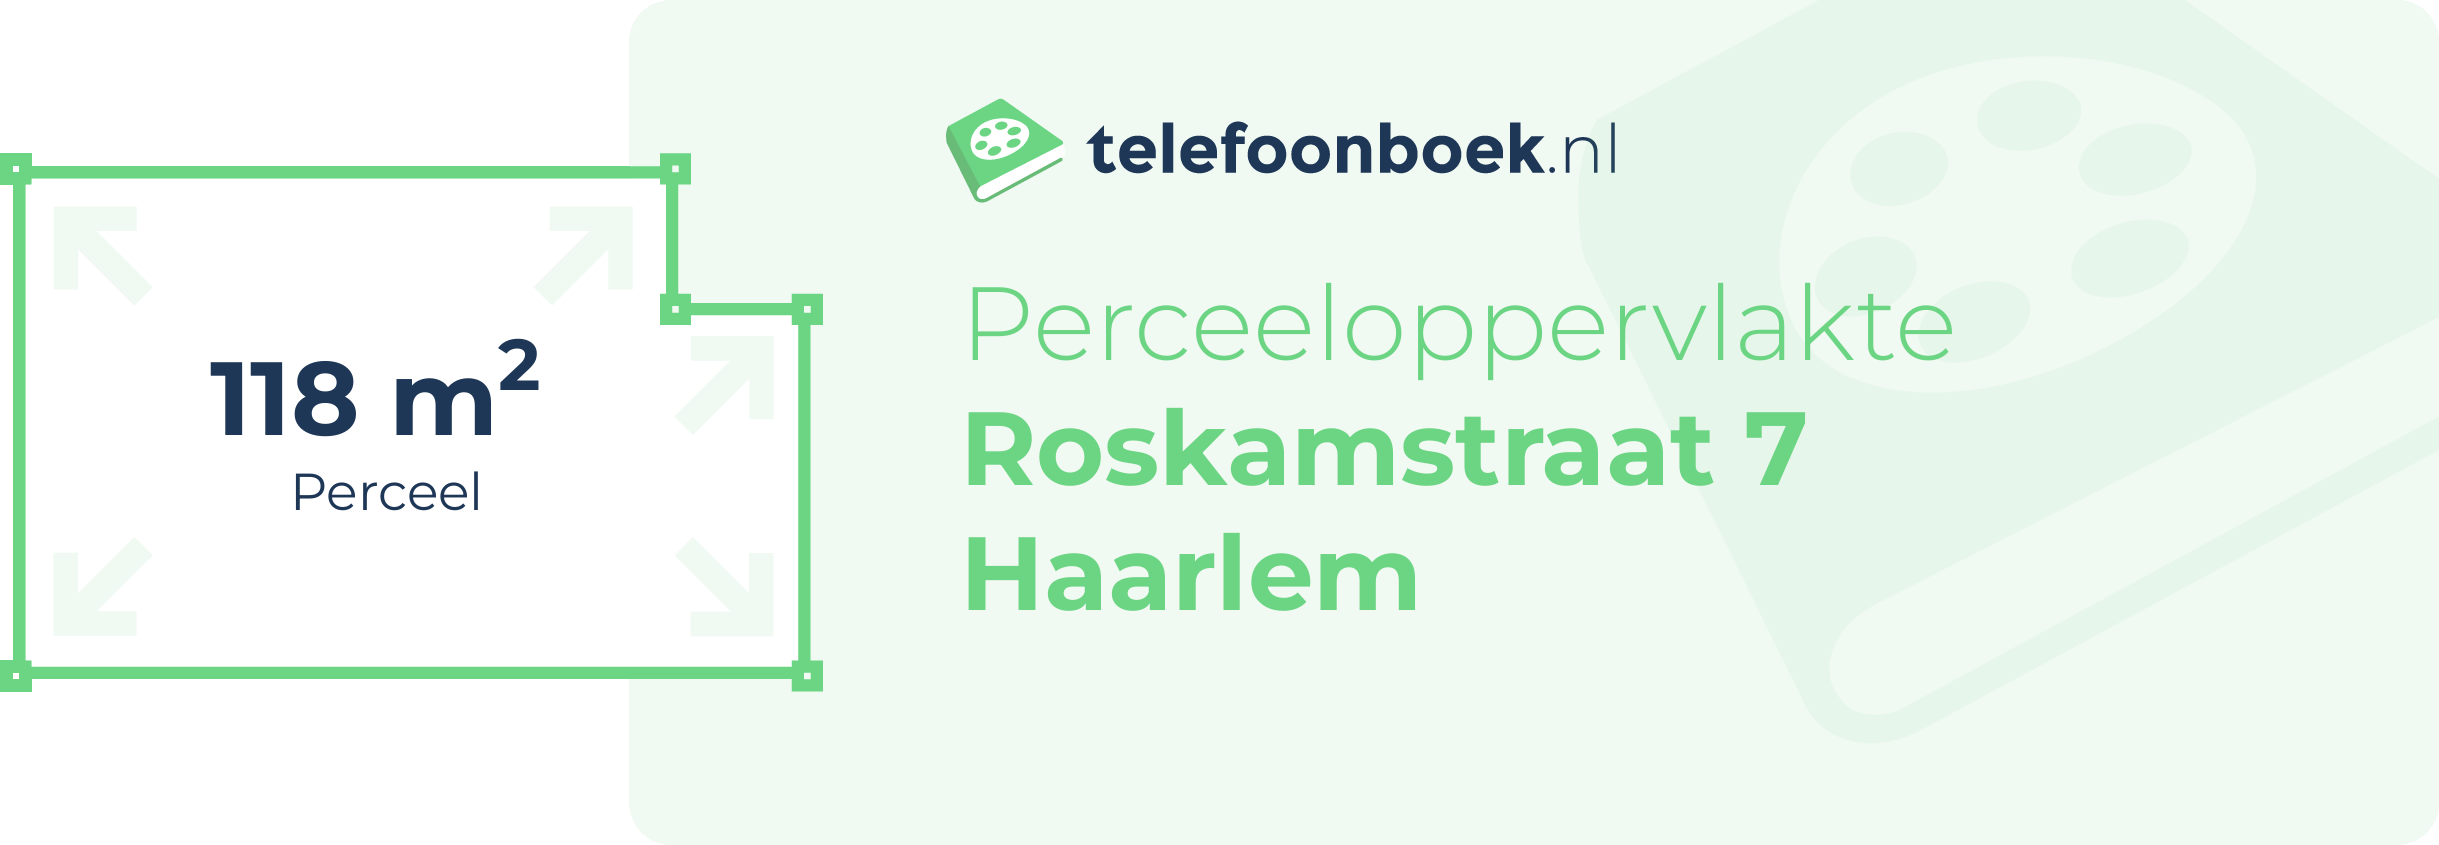 Perceeloppervlakte Roskamstraat 7 Haarlem